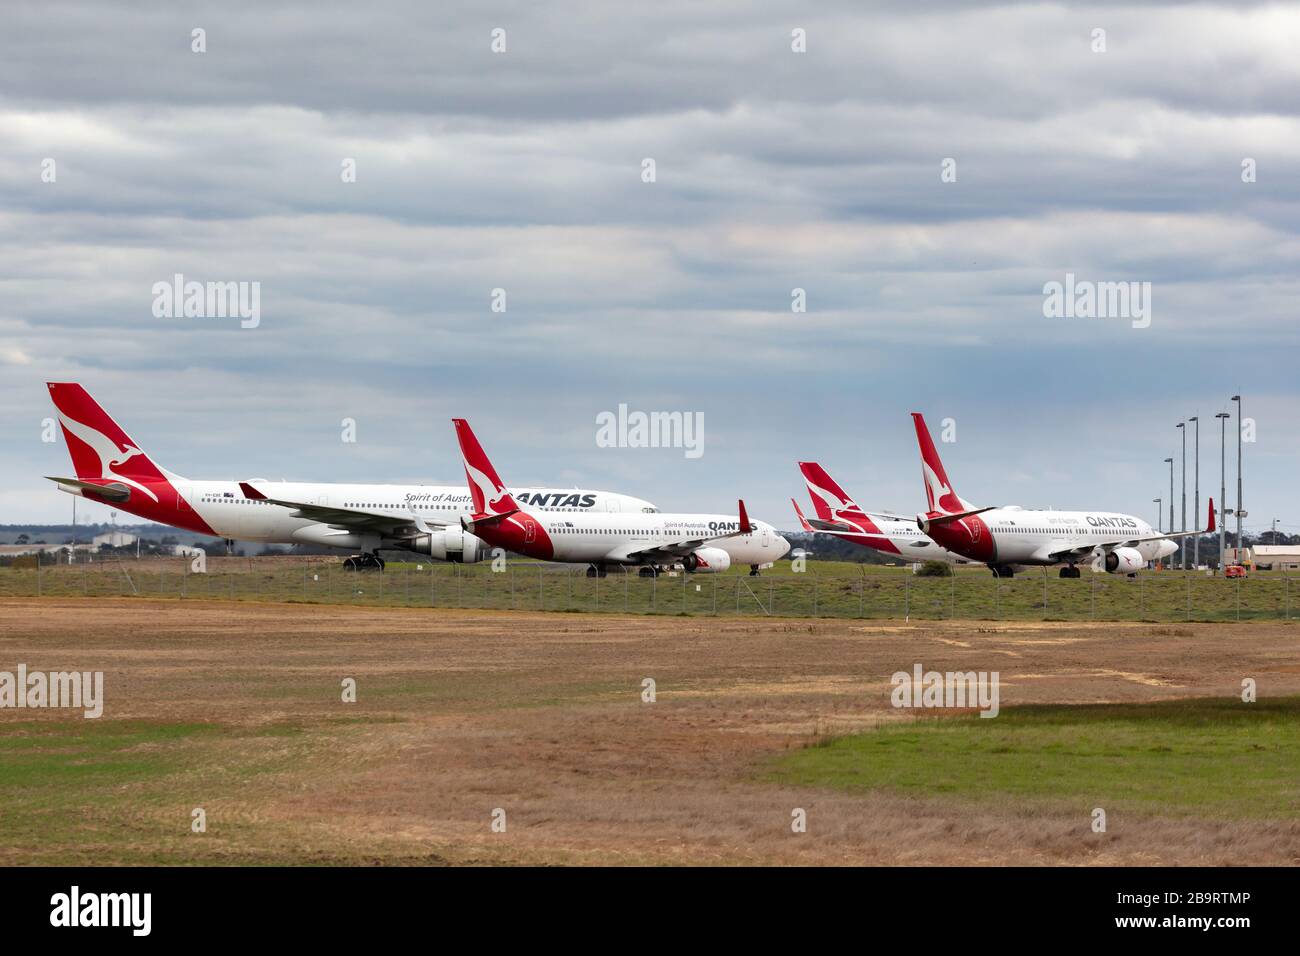 Qantas Flugzeug, das am Flughafen Avalon geparkt wurde, wurde während der Flugausfälle während des COVID-19-Ausbruchs (Coronavirus) geerdet, der die Luft lähmte Stockfoto